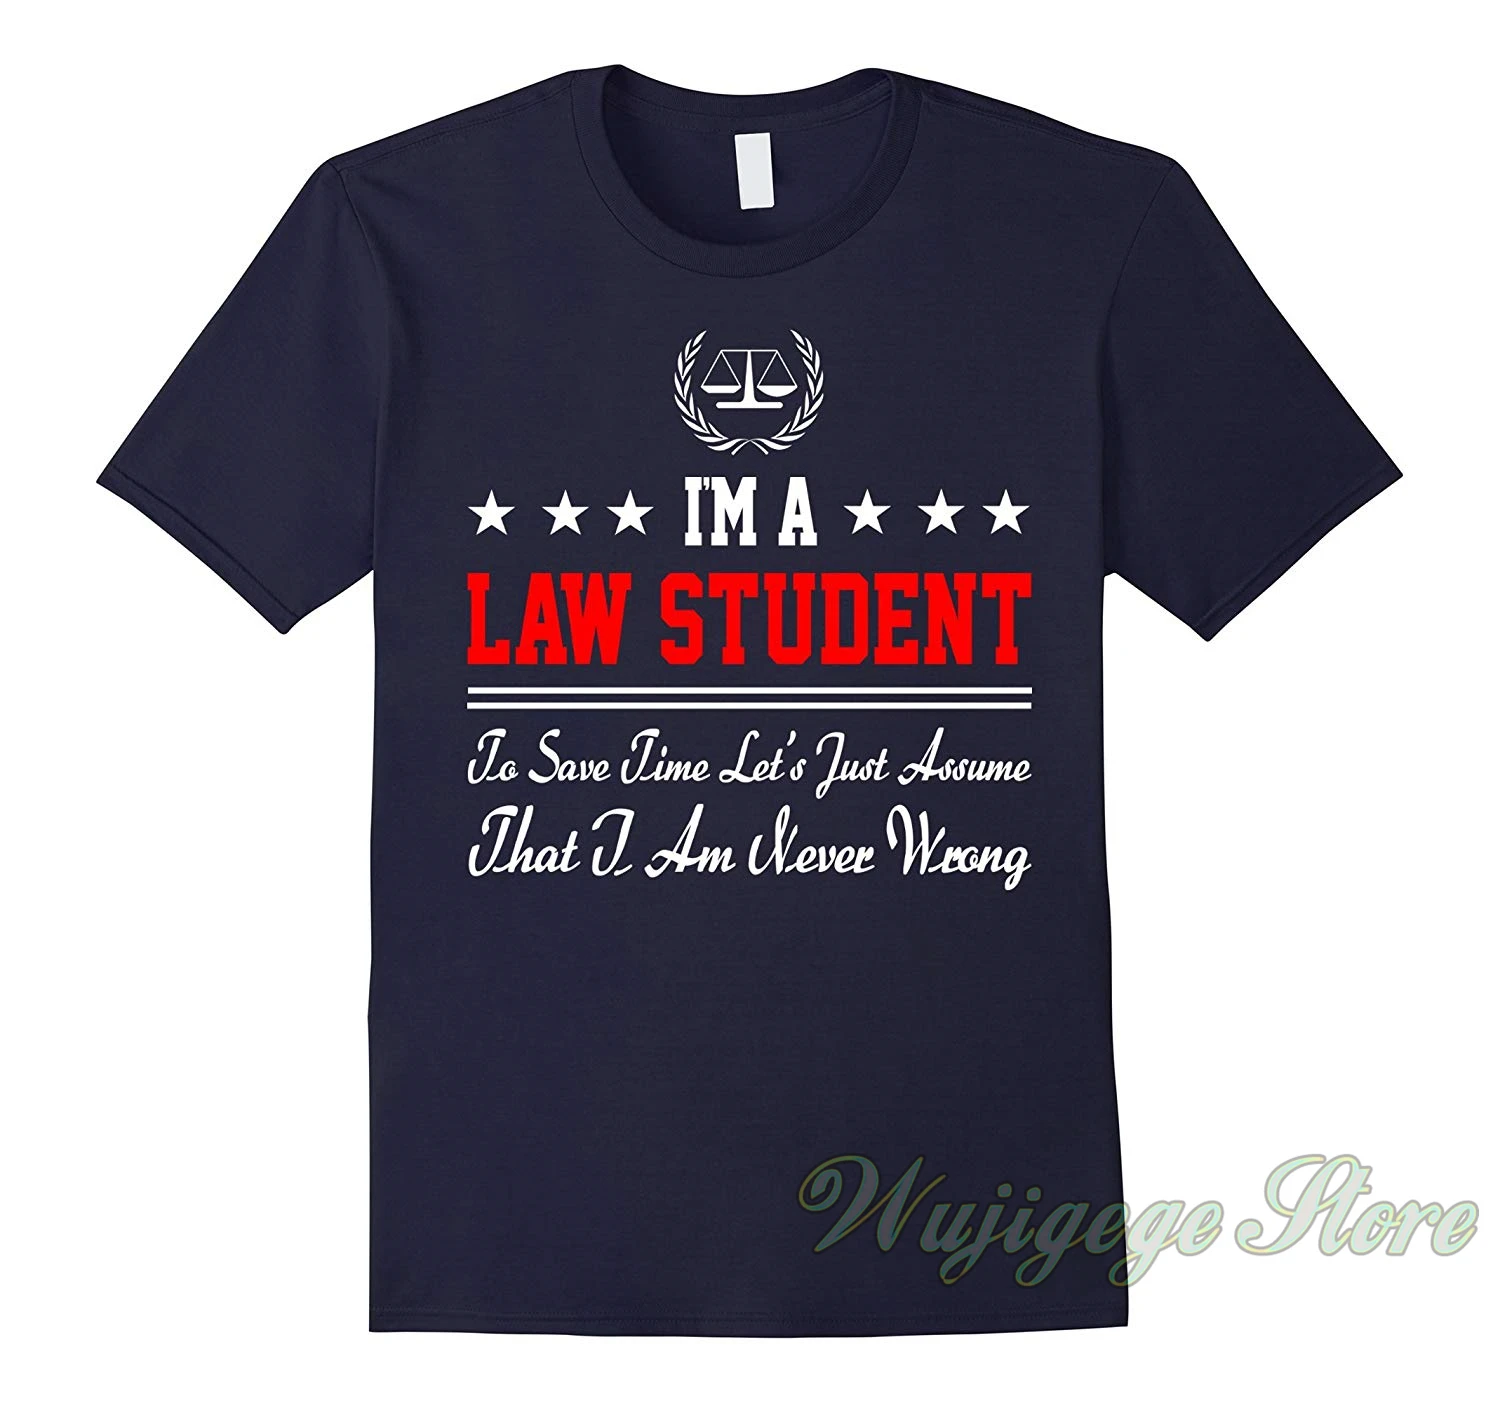 На лето и весну Забавный принт права студент рубашка для юриста забавные определение рубашка(Ver1) футболка для мужчин и женщин, топы, футболки, хлопок, футболки